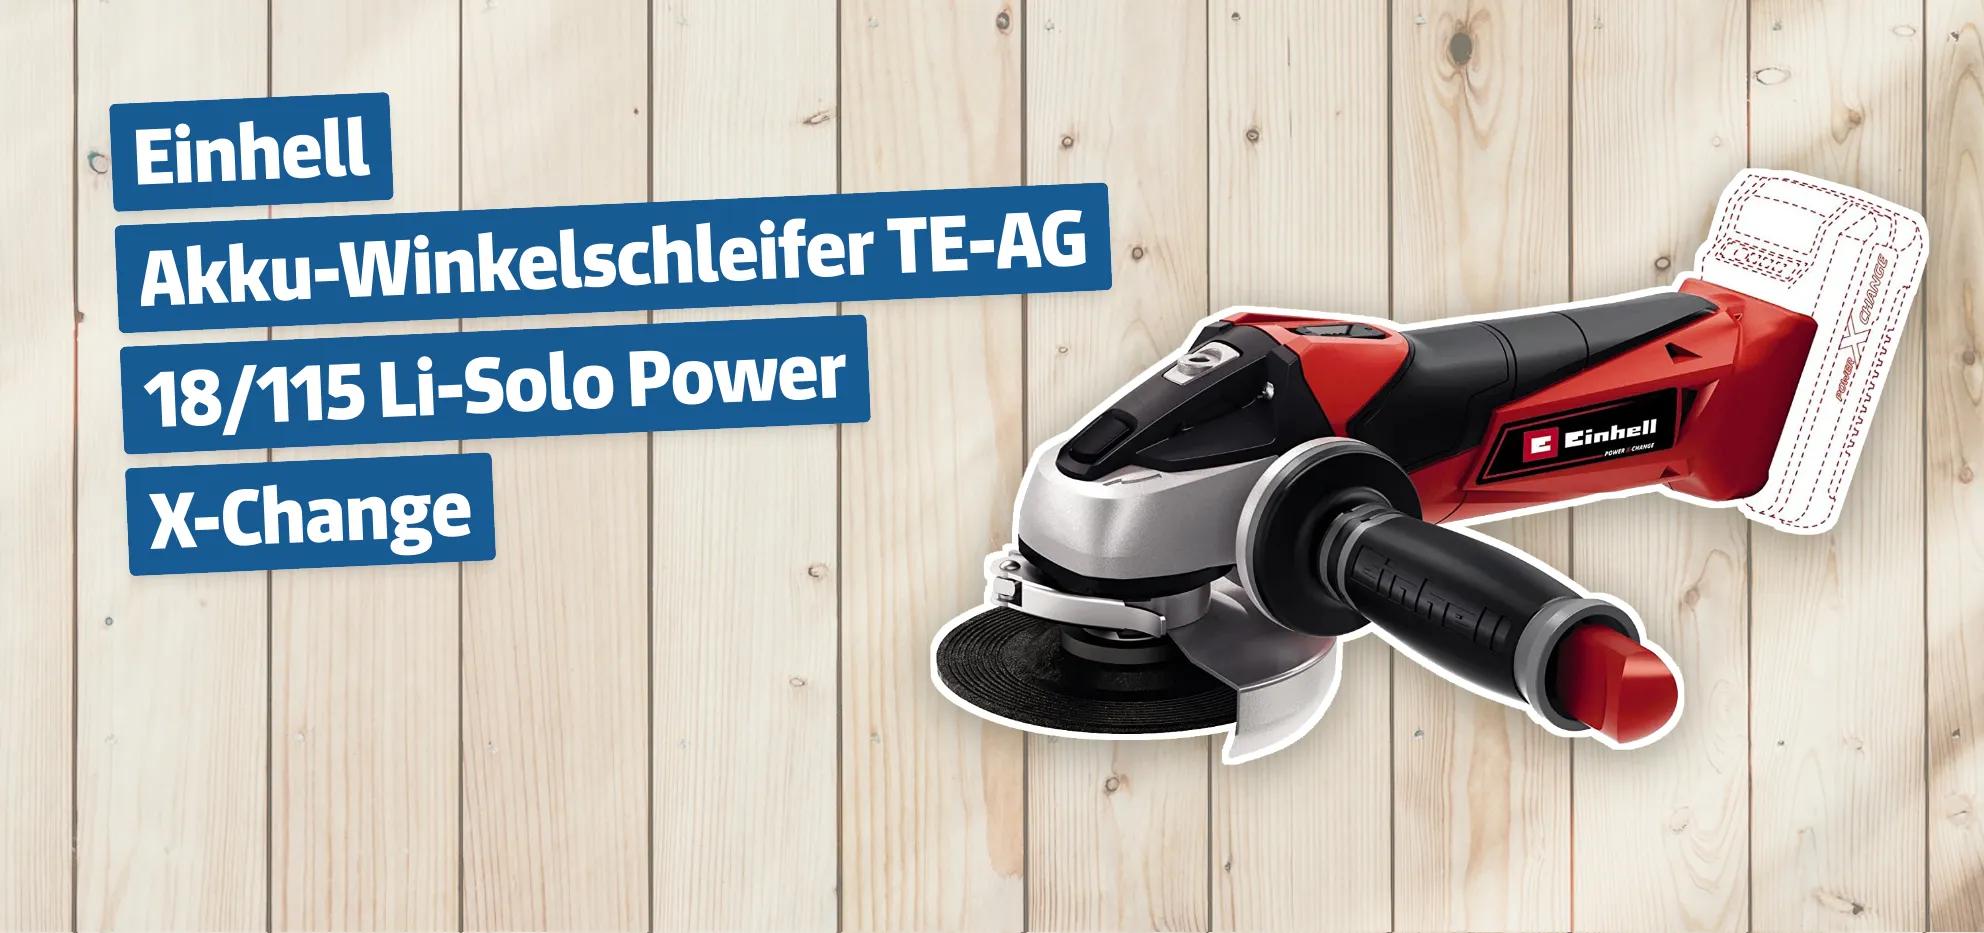 Einhell Akku-Winkelschleifer TE-AG 18/115 Li-Solo Power X-Change